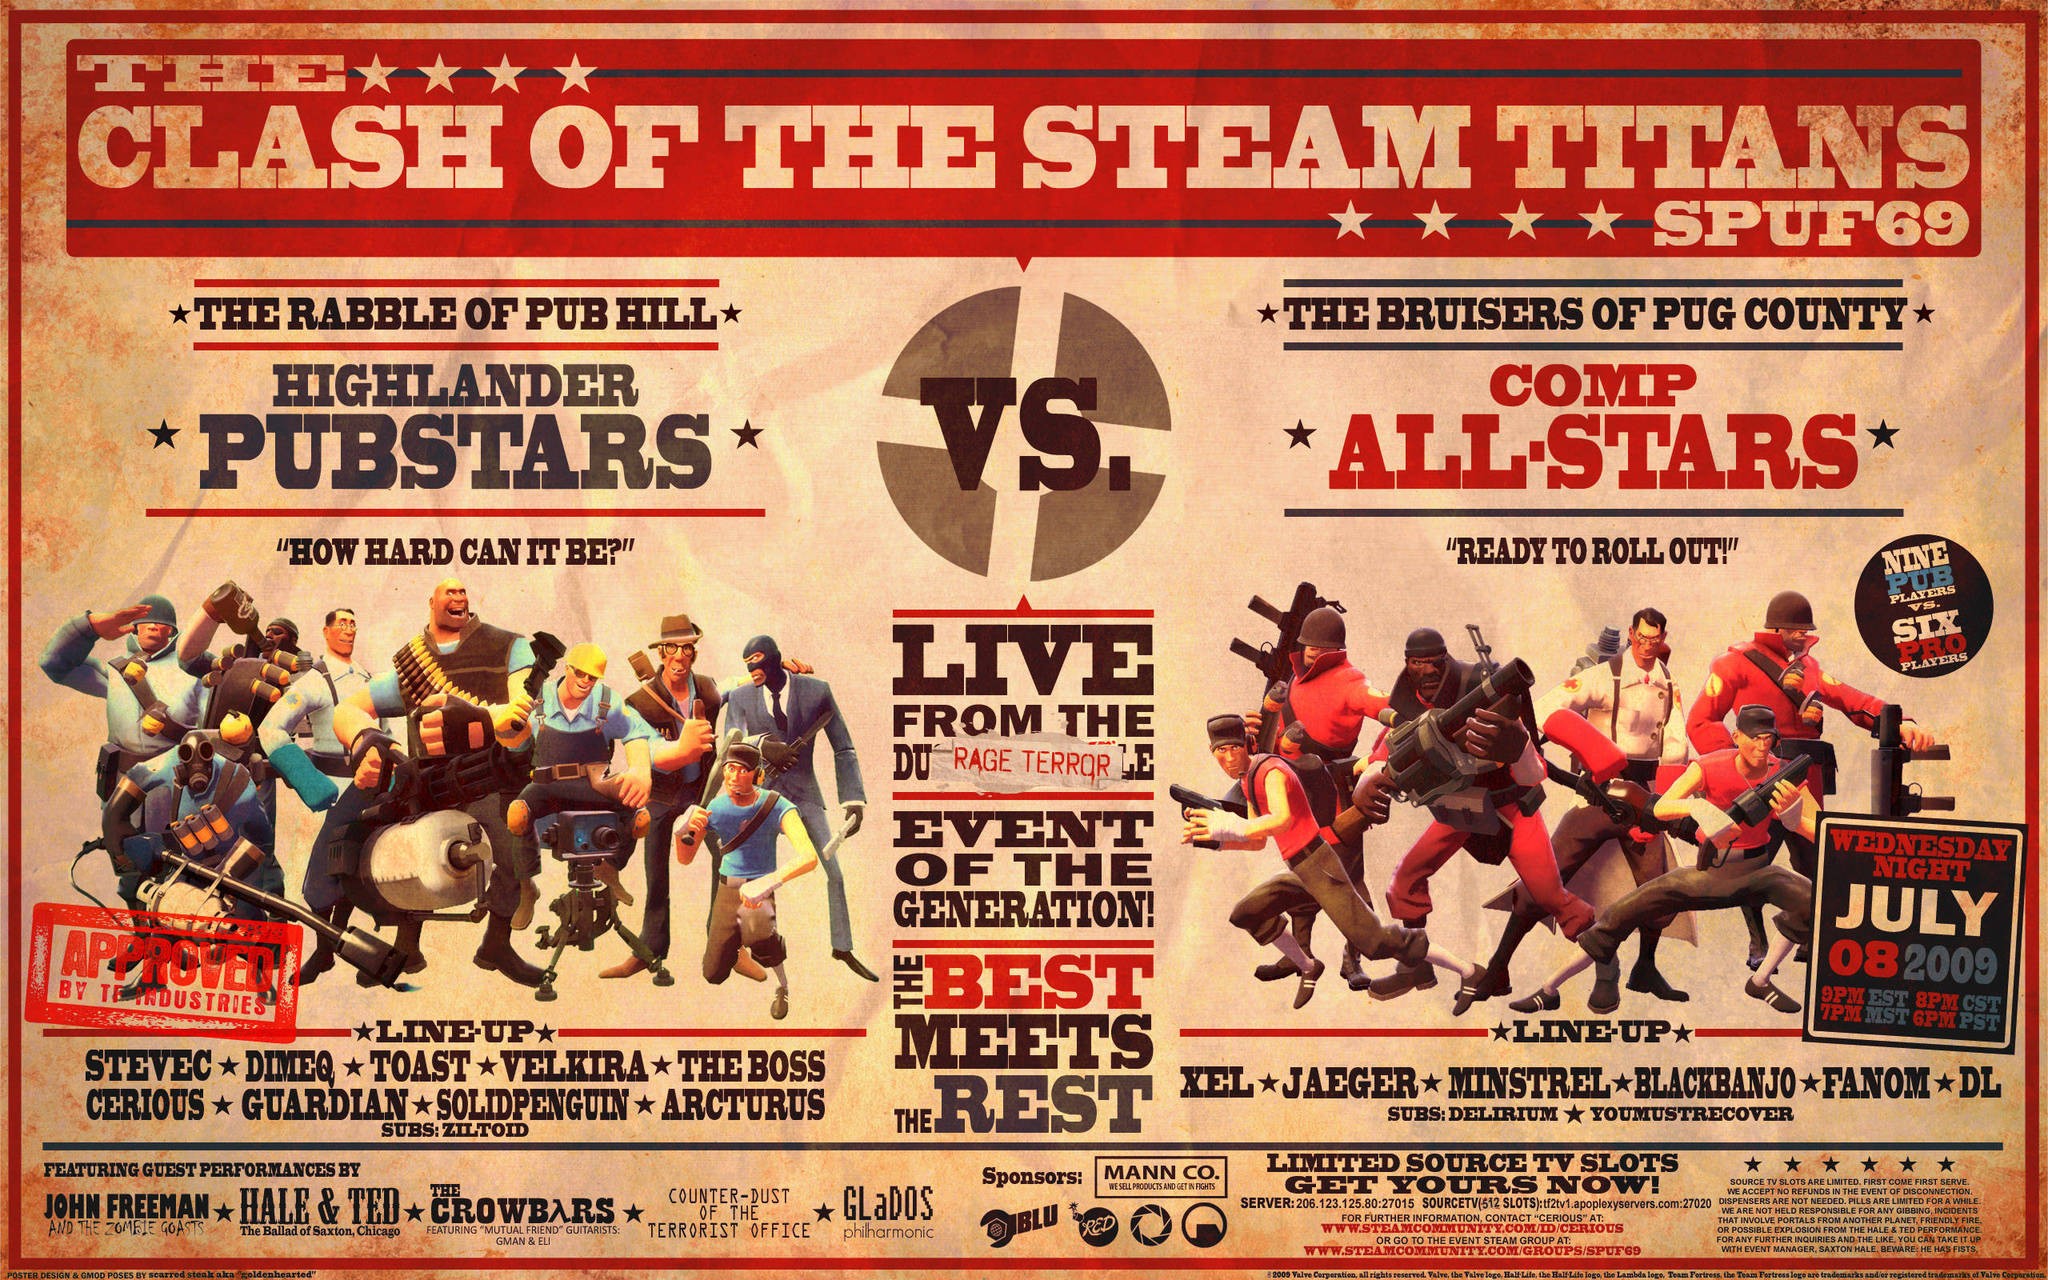 Team Fortress 2 - desktop wallpaper